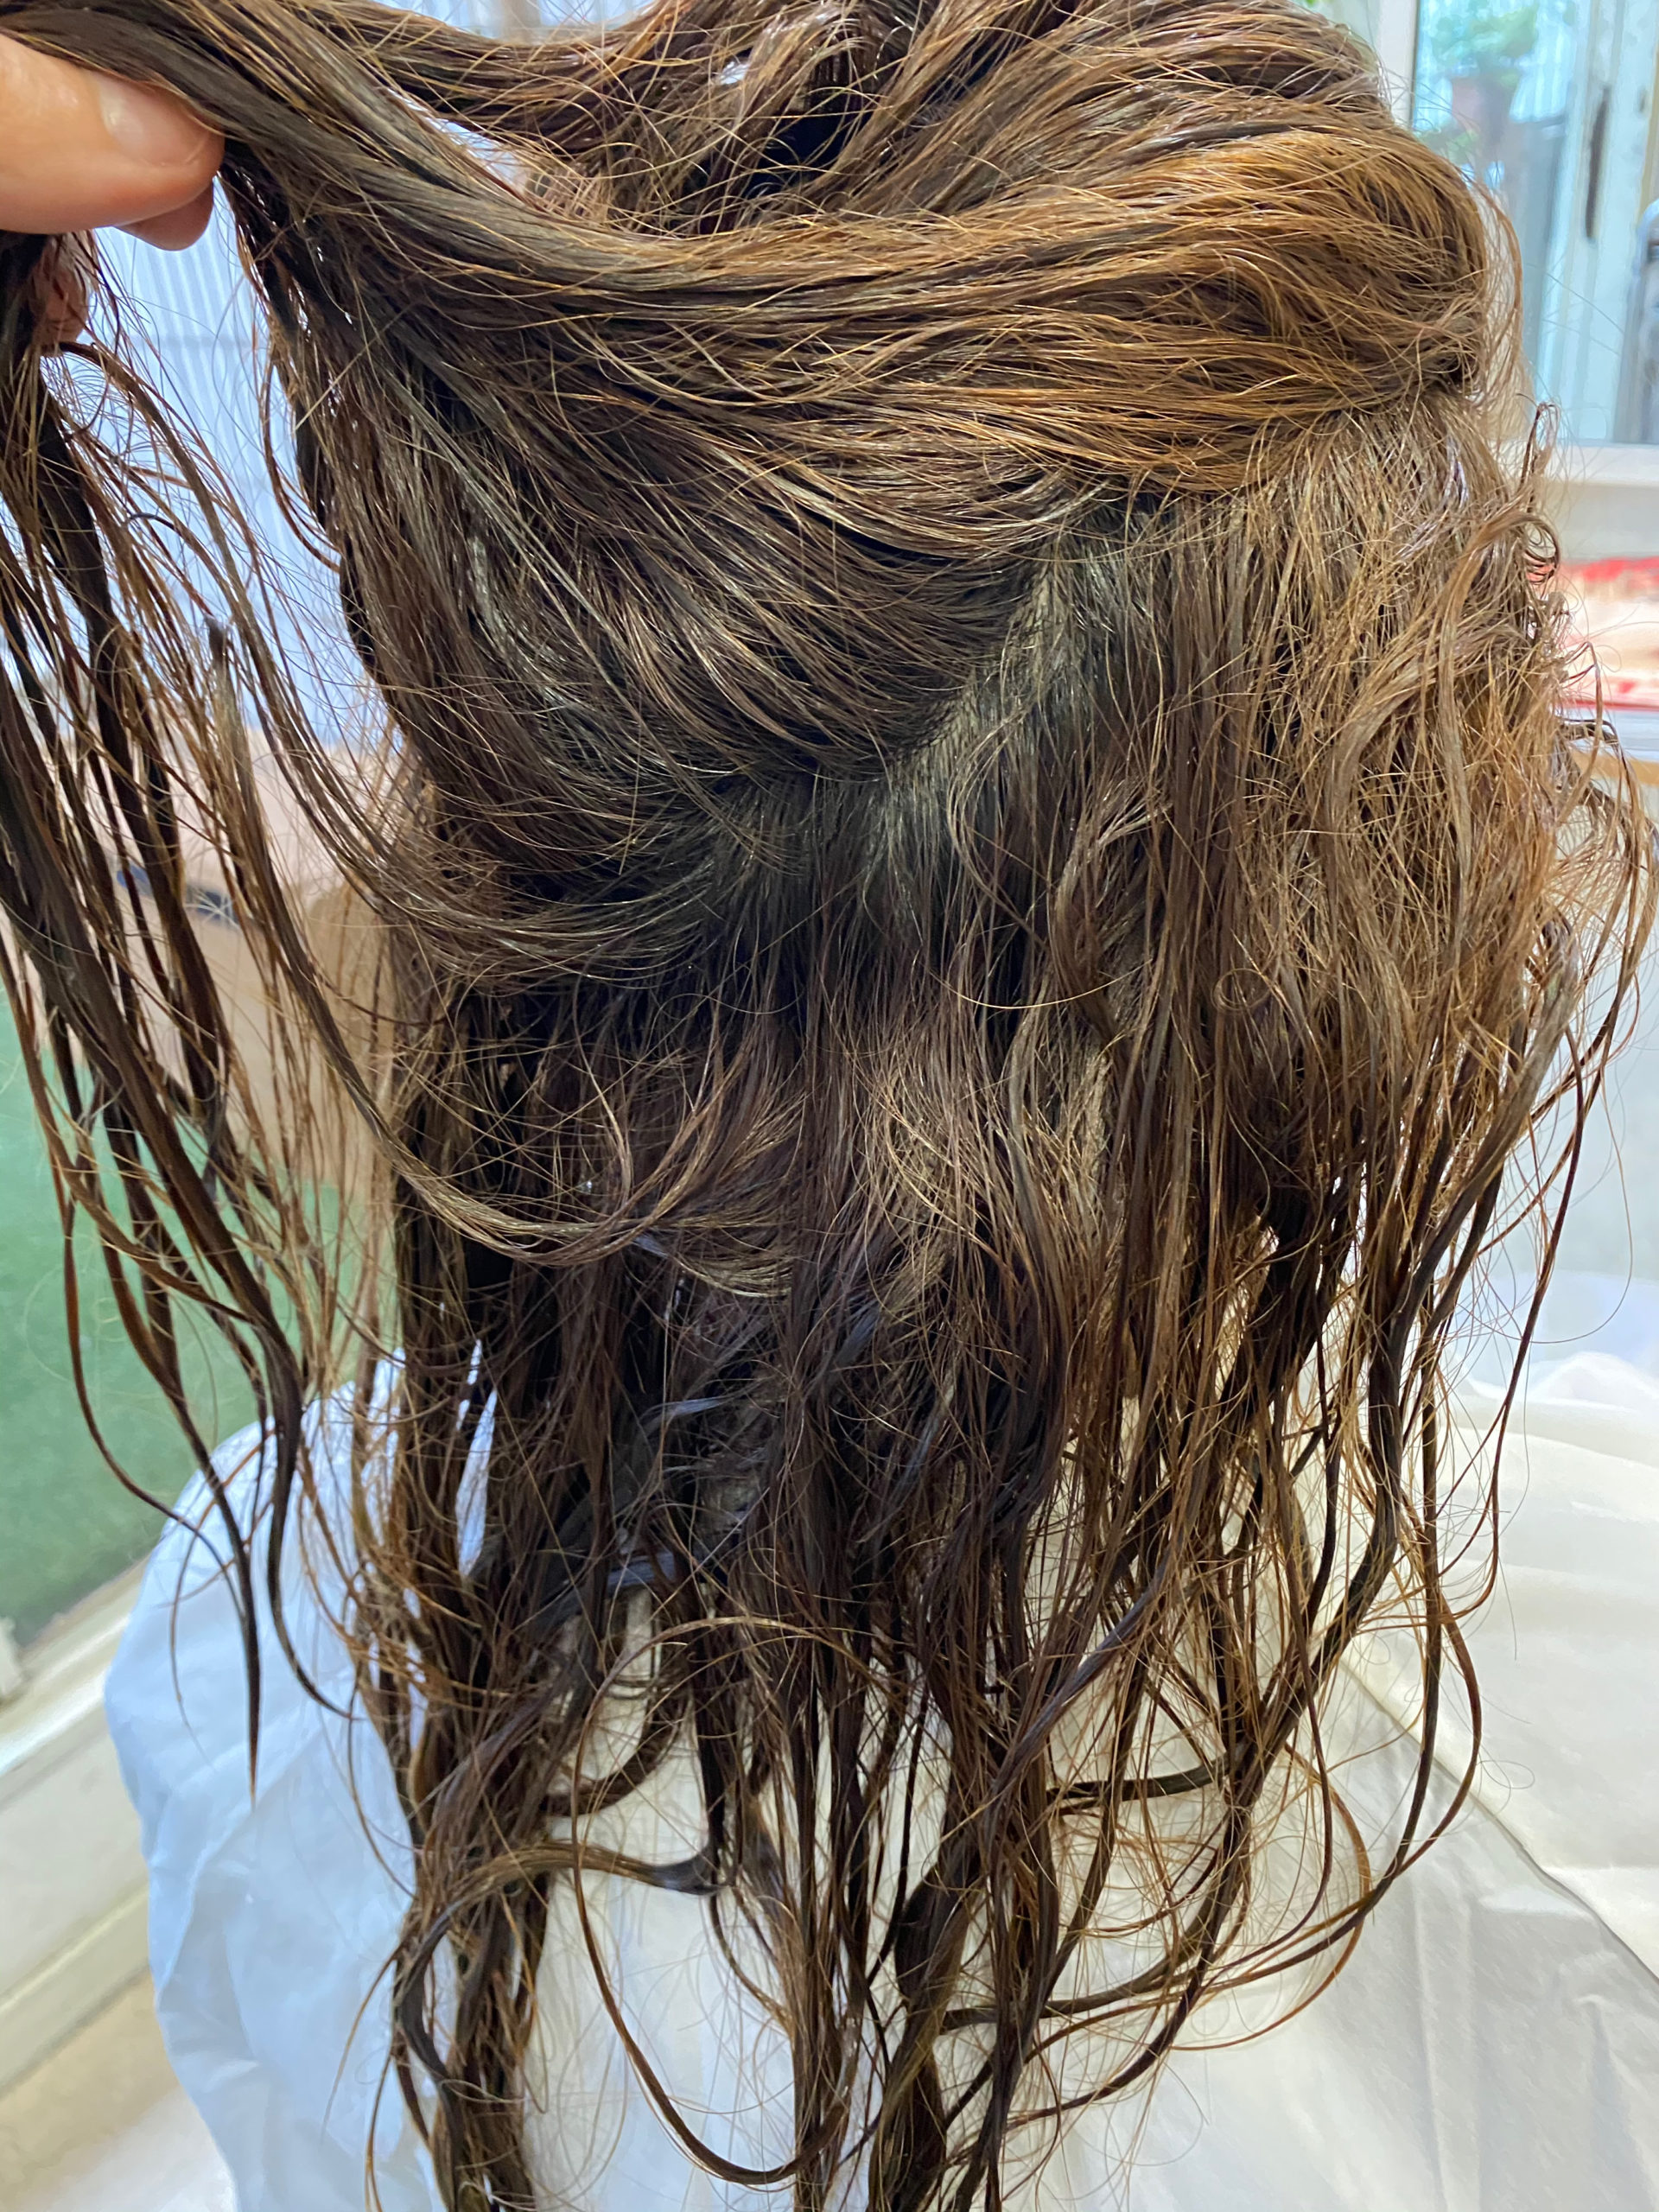 ブリーチをしている髪に縮毛矯正で艶髪。原宿・表参道『髪のお悩みを解決するヘアケア美容師の挑戦』